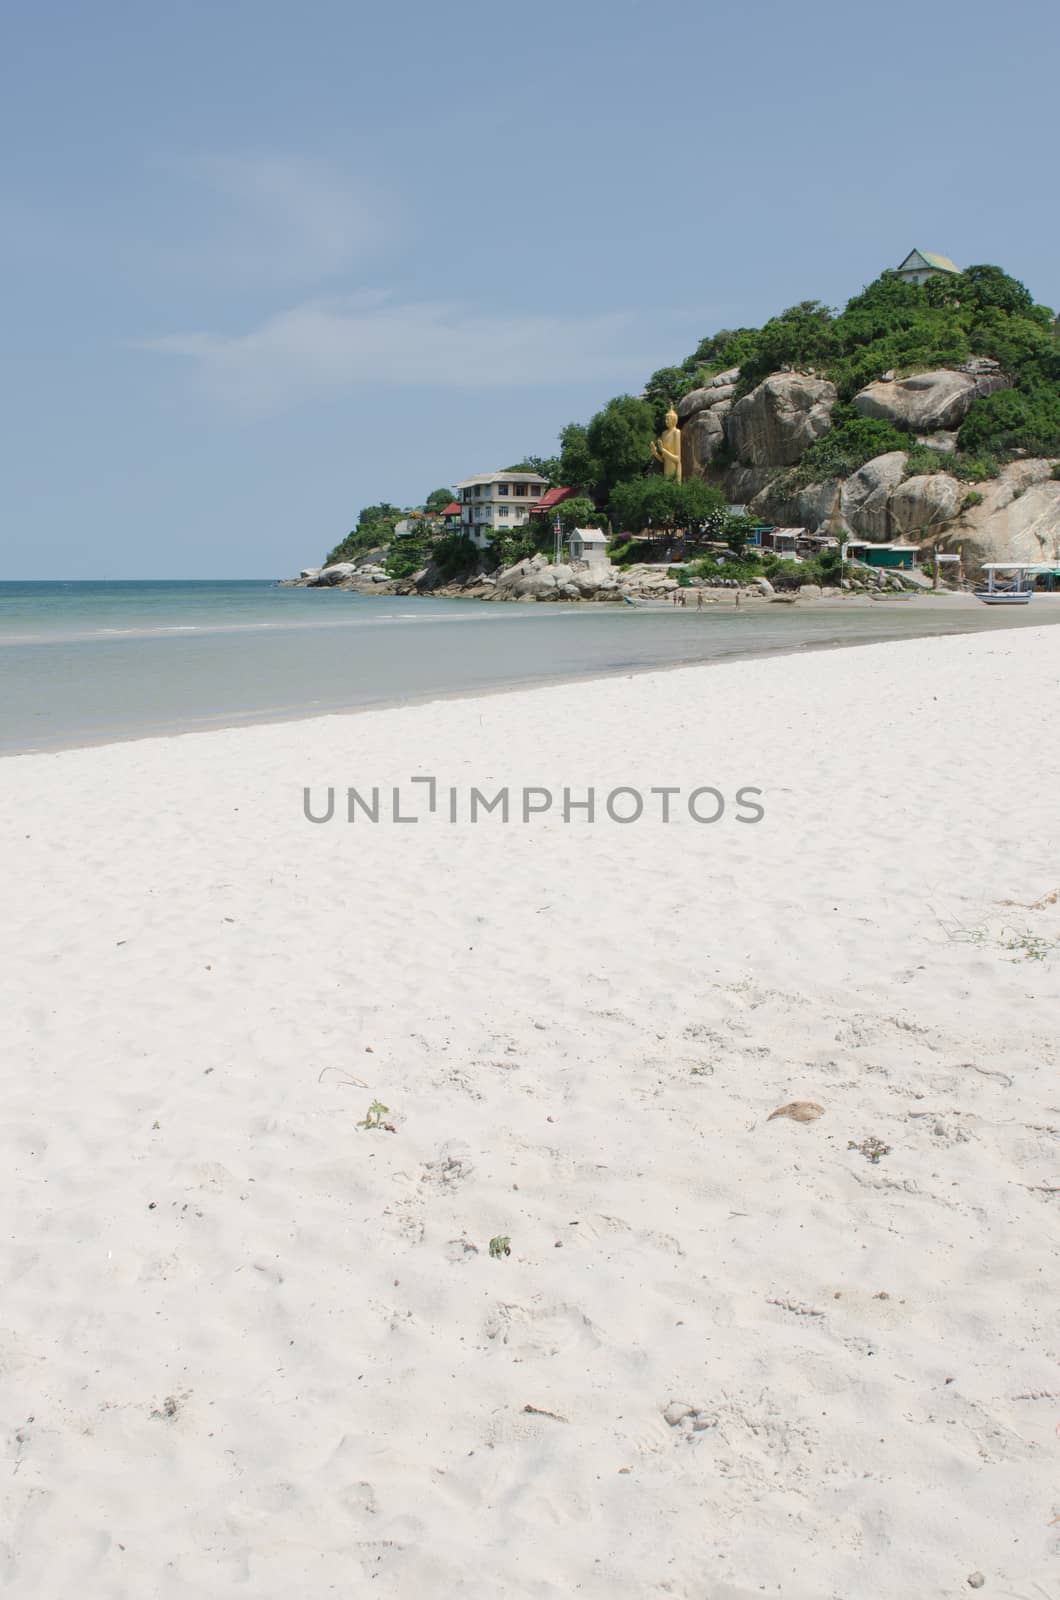 Hua Hin beach in Thailand by hinnamsaisuy